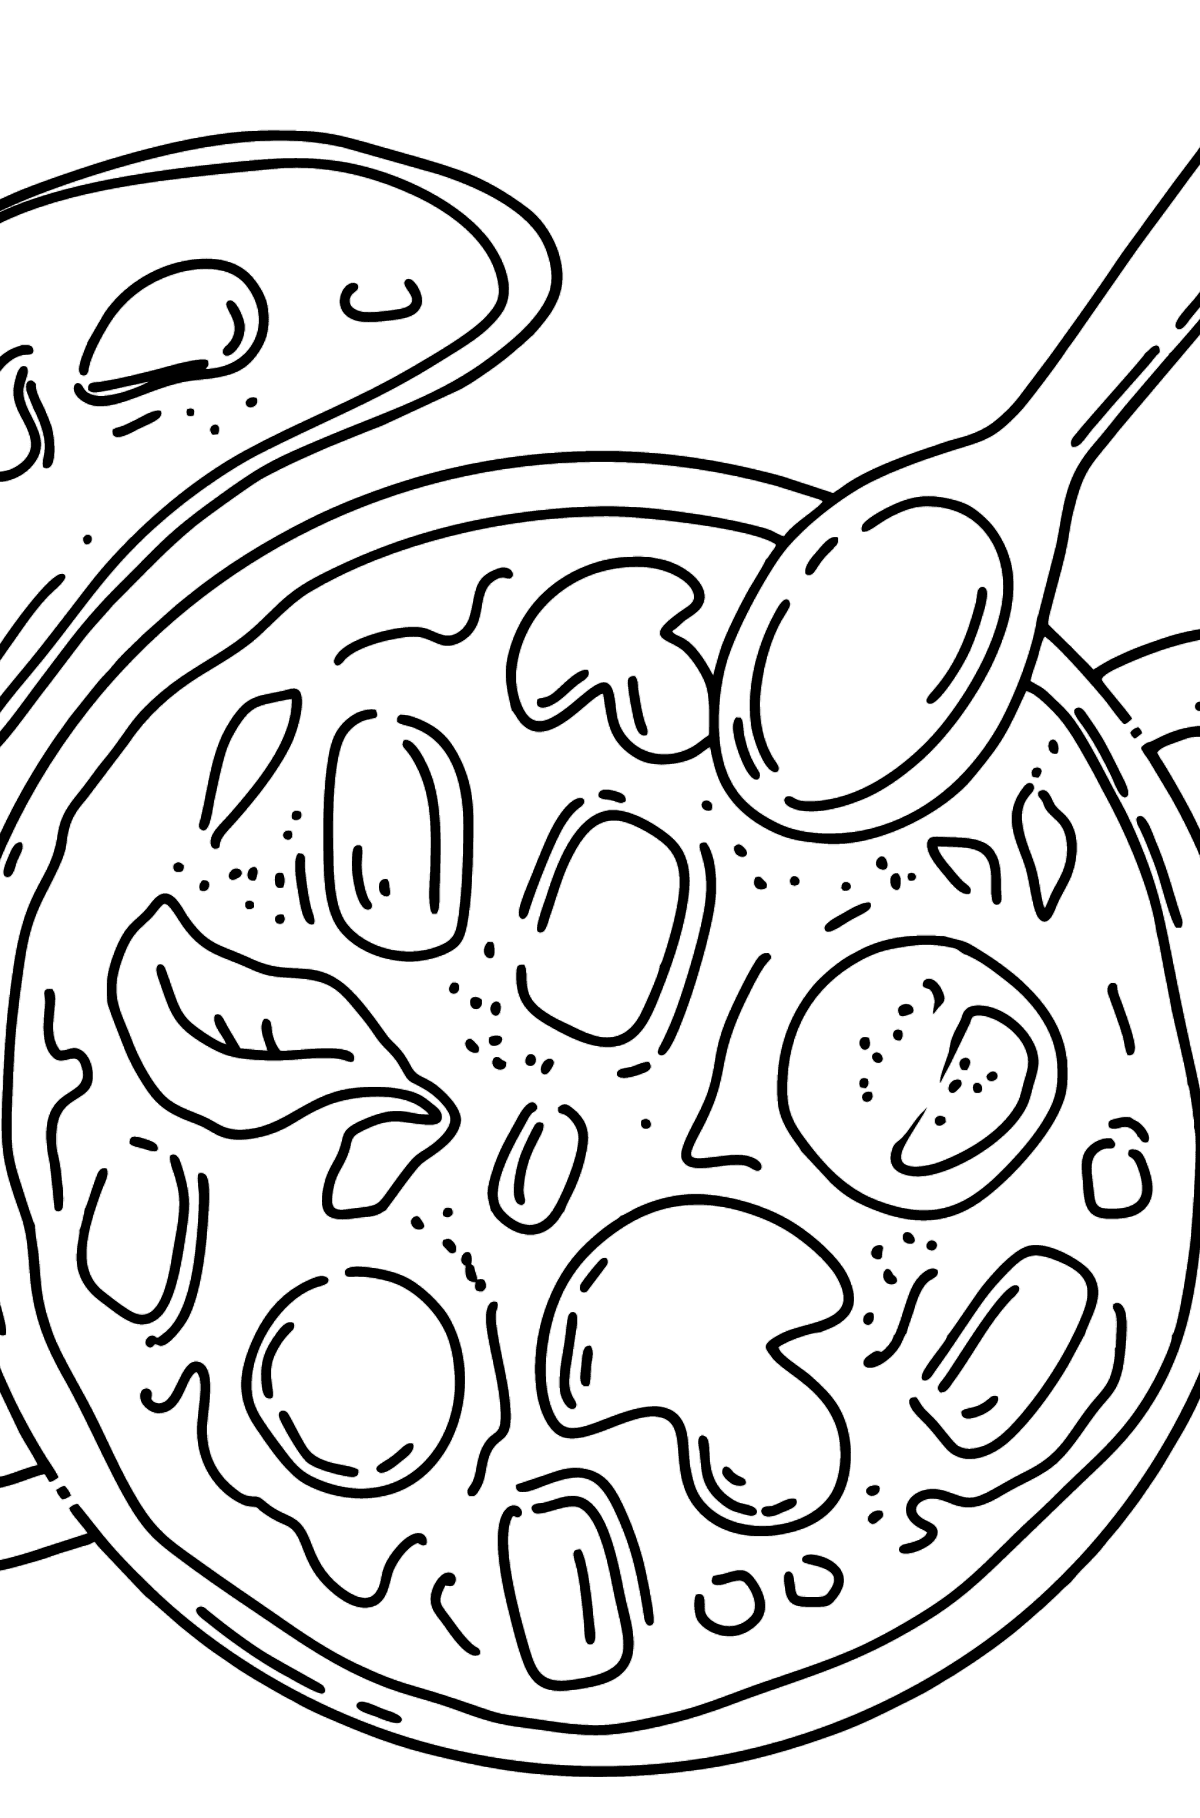 Desenho para colorir do almoço - sopa - Imagens para Colorir para Crianças